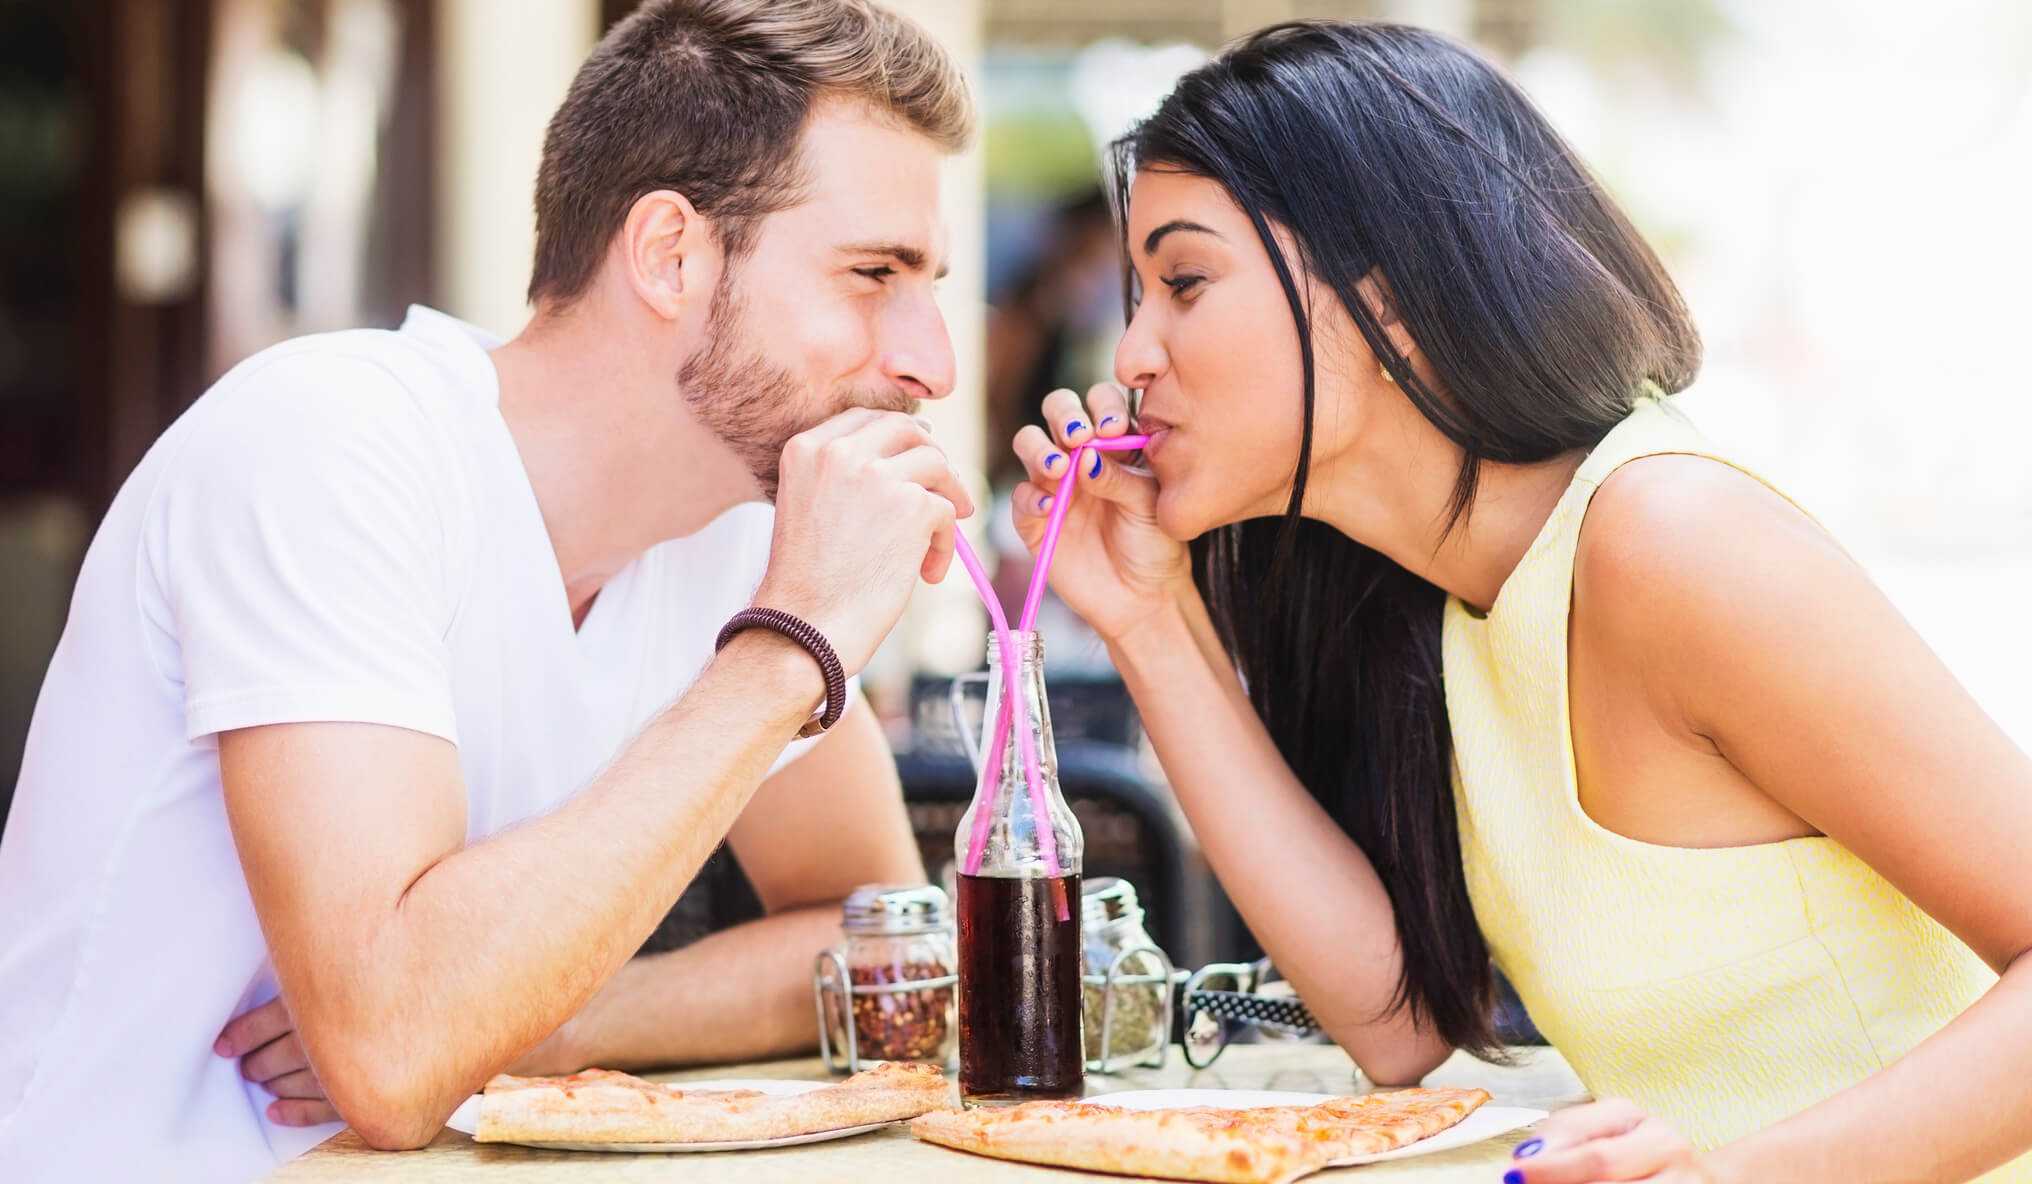 15 признаков того, что ваше первое свидание прошло успешно / любить | советы и полезная информация об отношениях и браке.